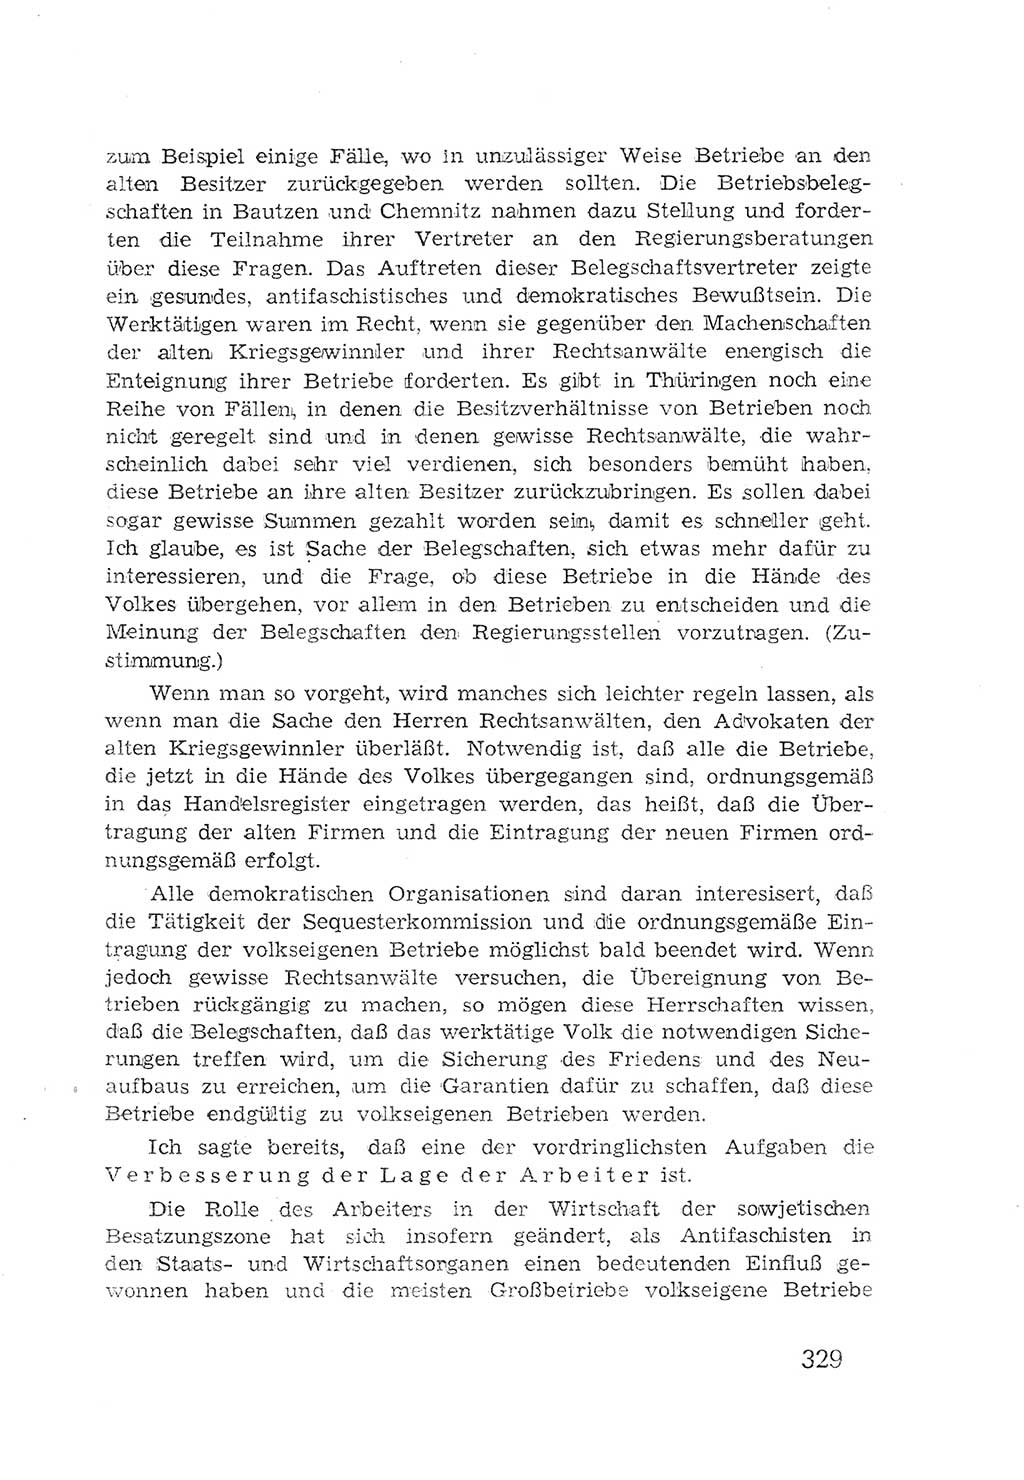 Protokoll der Verhandlungen des 2. Parteitages der Sozialistischen Einheitspartei Deutschlands (SED) [Sowjetische Besatzungszone (SBZ) Deutschlands] 1947, Seite 329 (Prot. Verh. 2. PT SED SBZ Dtl. 1947, S. 329)